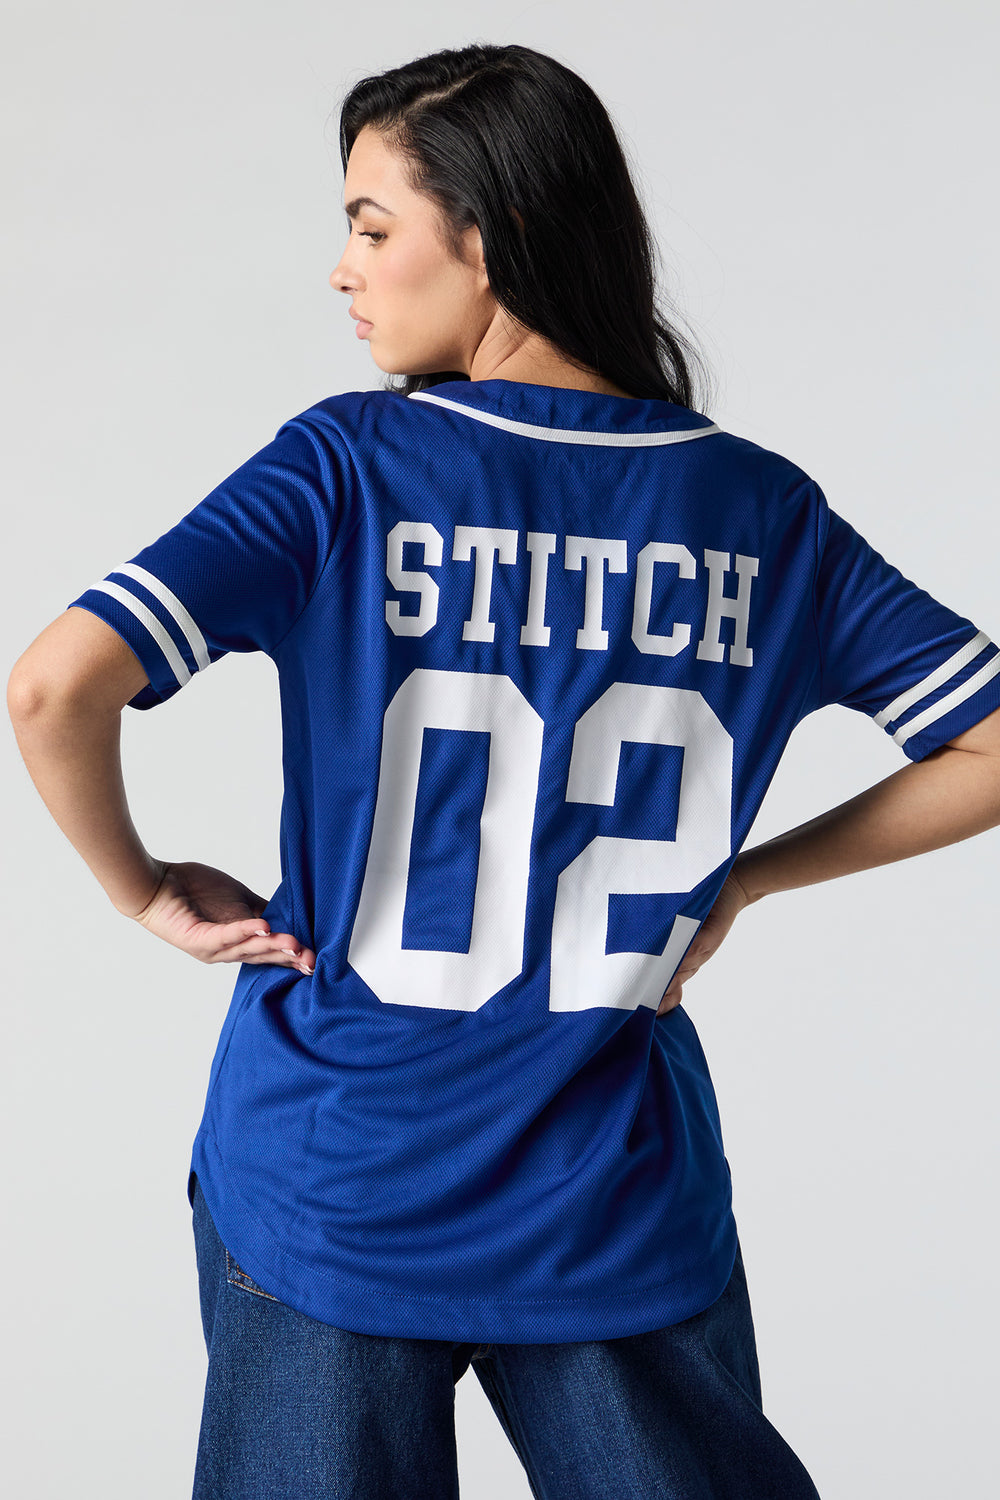 Stitch Graphic Mesh Baseball Jersey Stitch Graphic Mesh Baseball Jersey 4